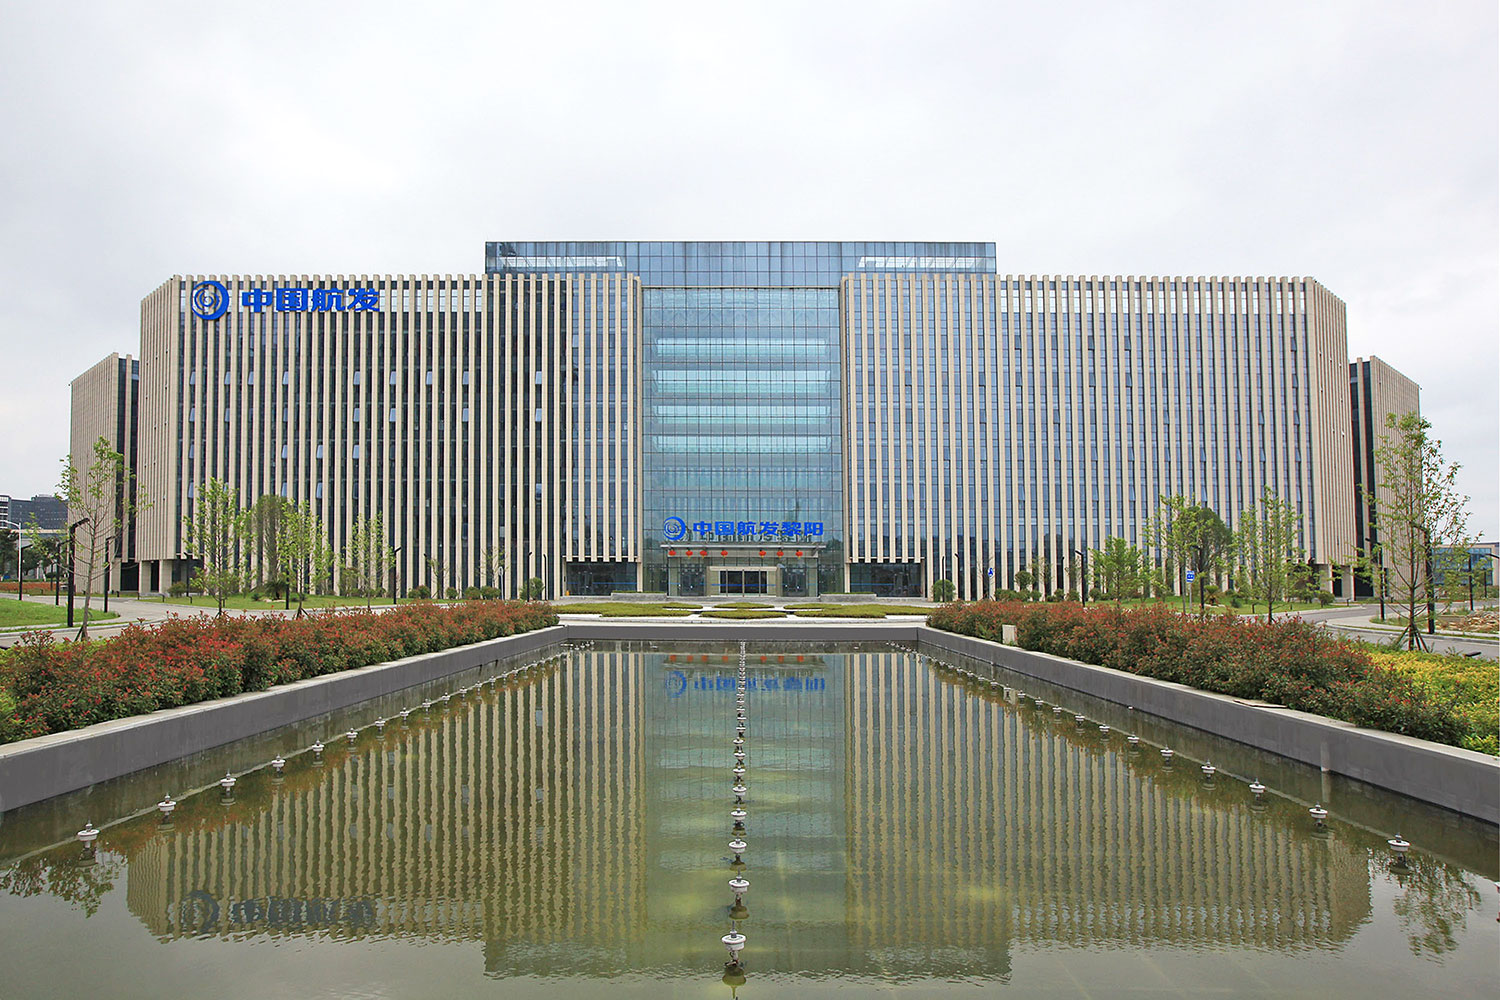 Guizhou scientific research building 101